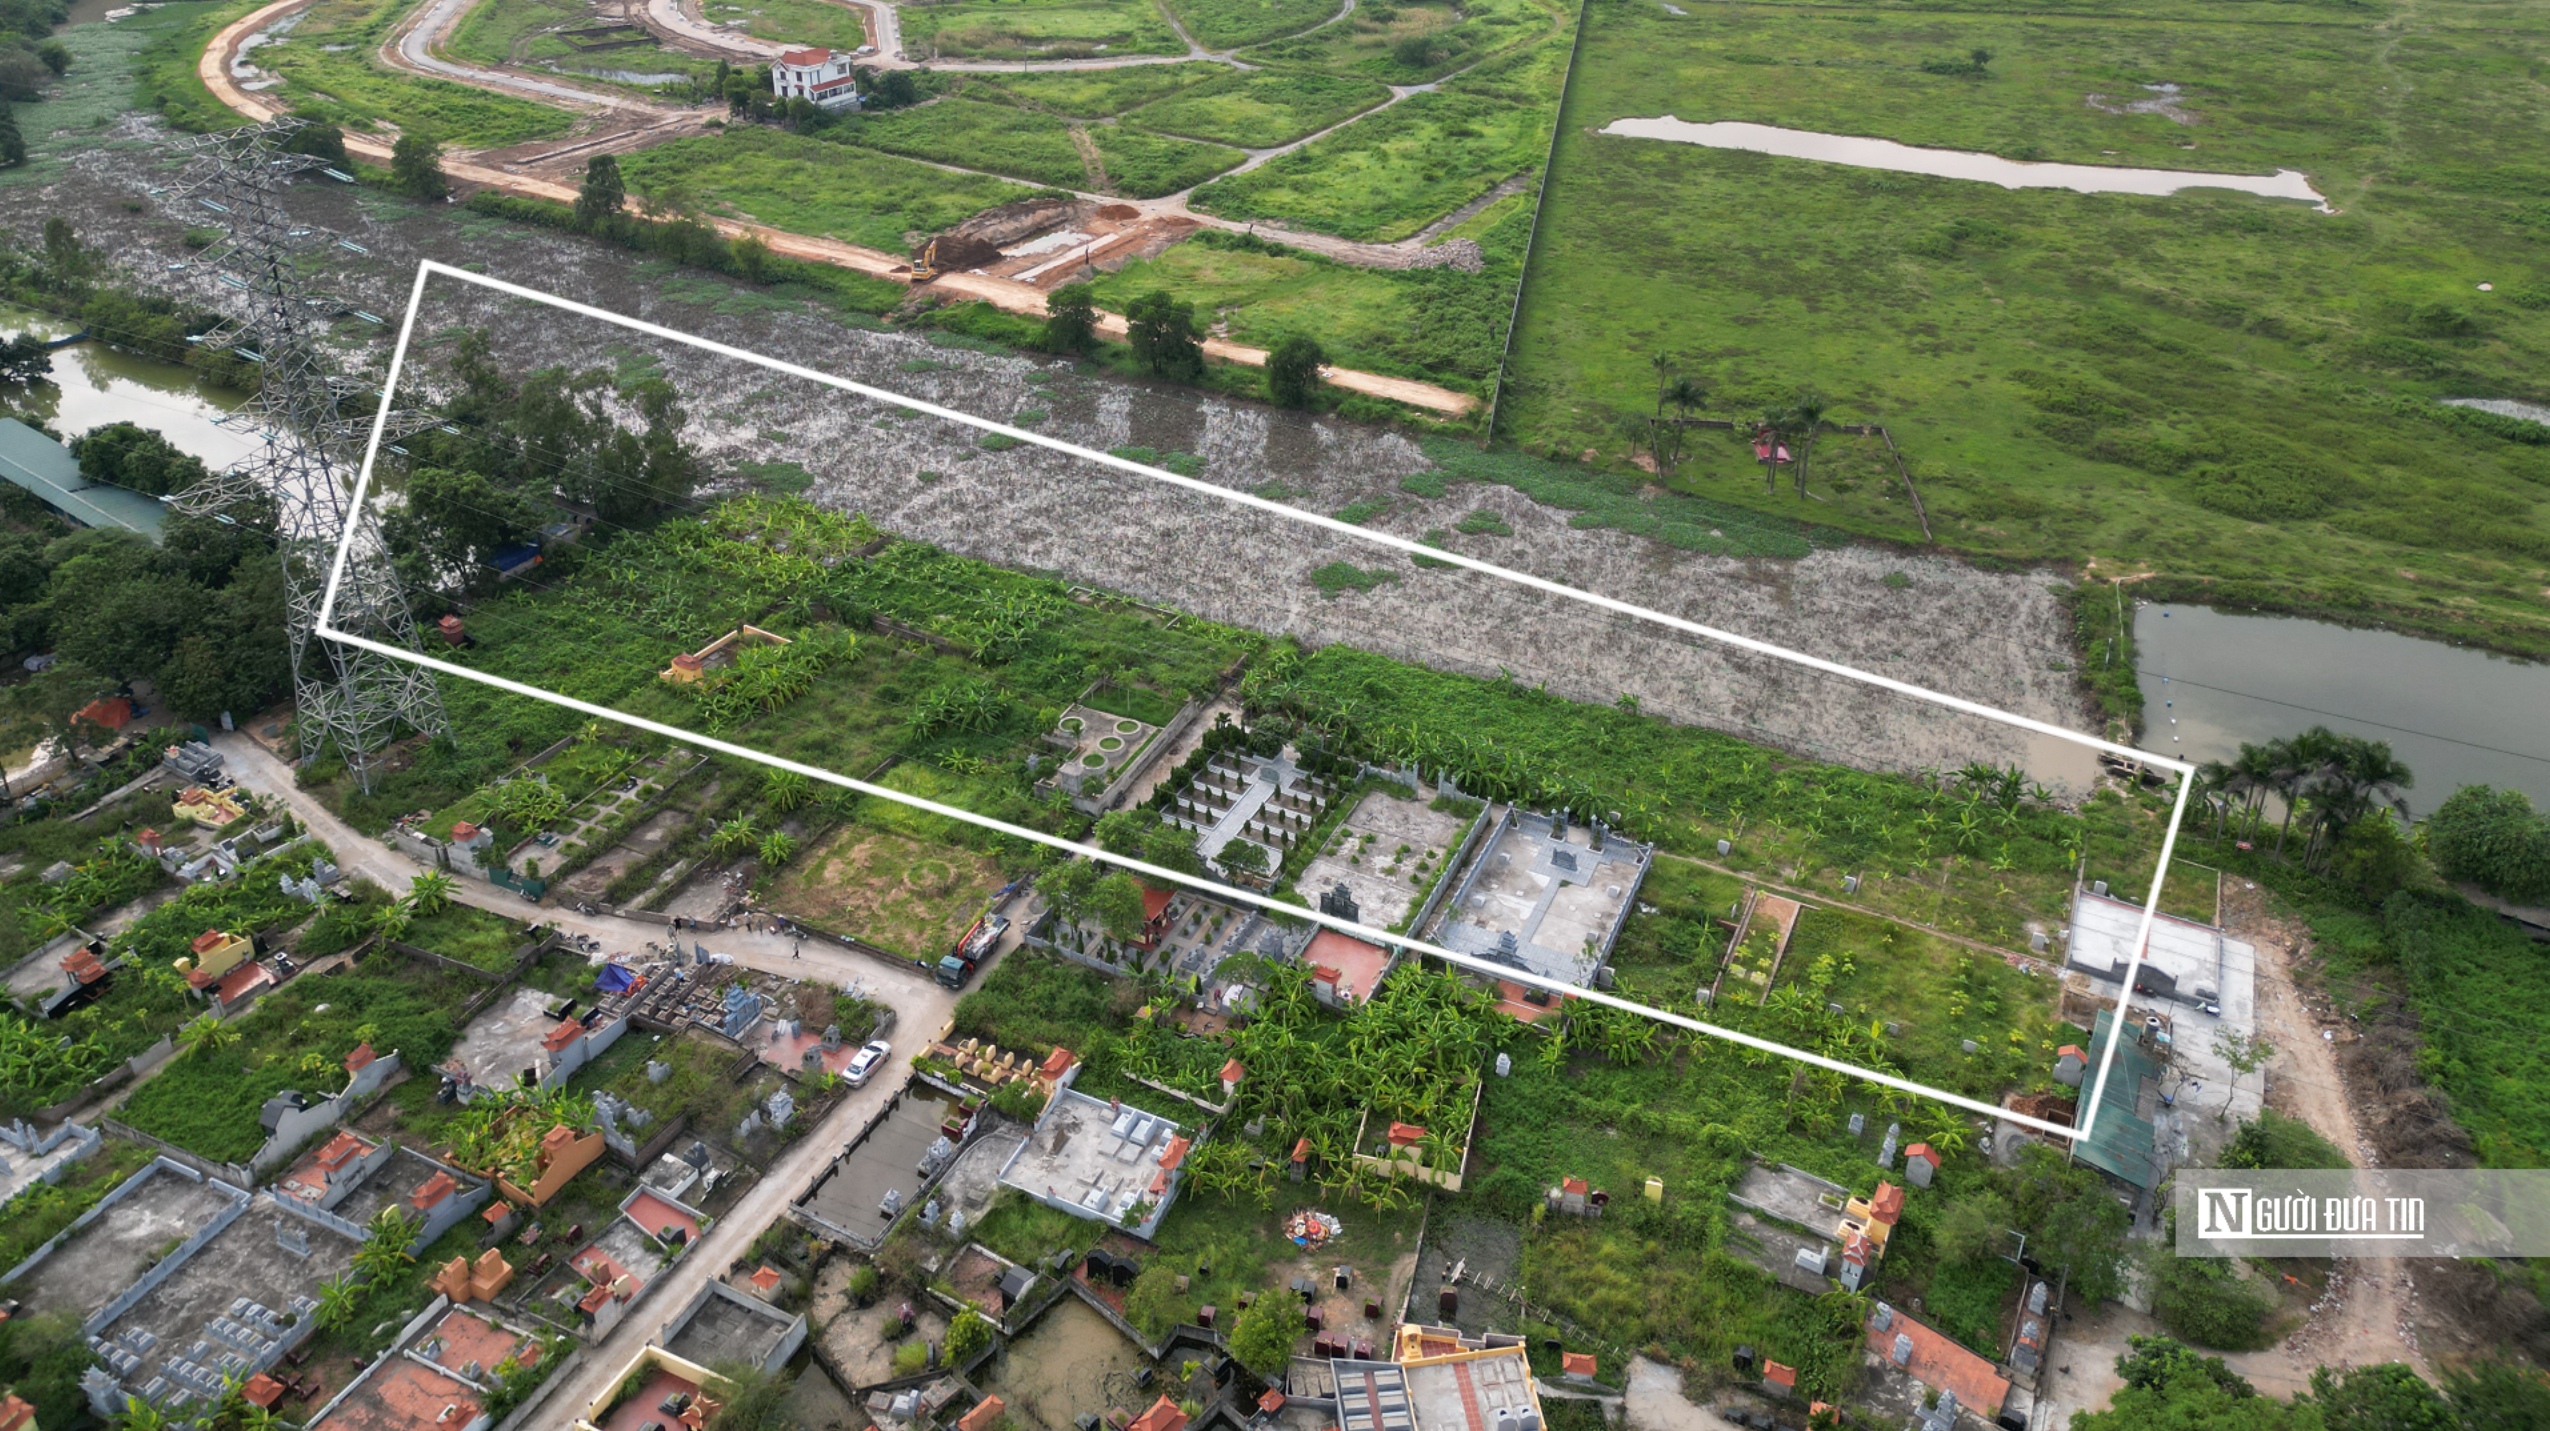 Hồ sơ điều tra - Vụ đất công bị lấn chiếm tại Hà Nội: Chính quyền loay hoay (Hình 2).